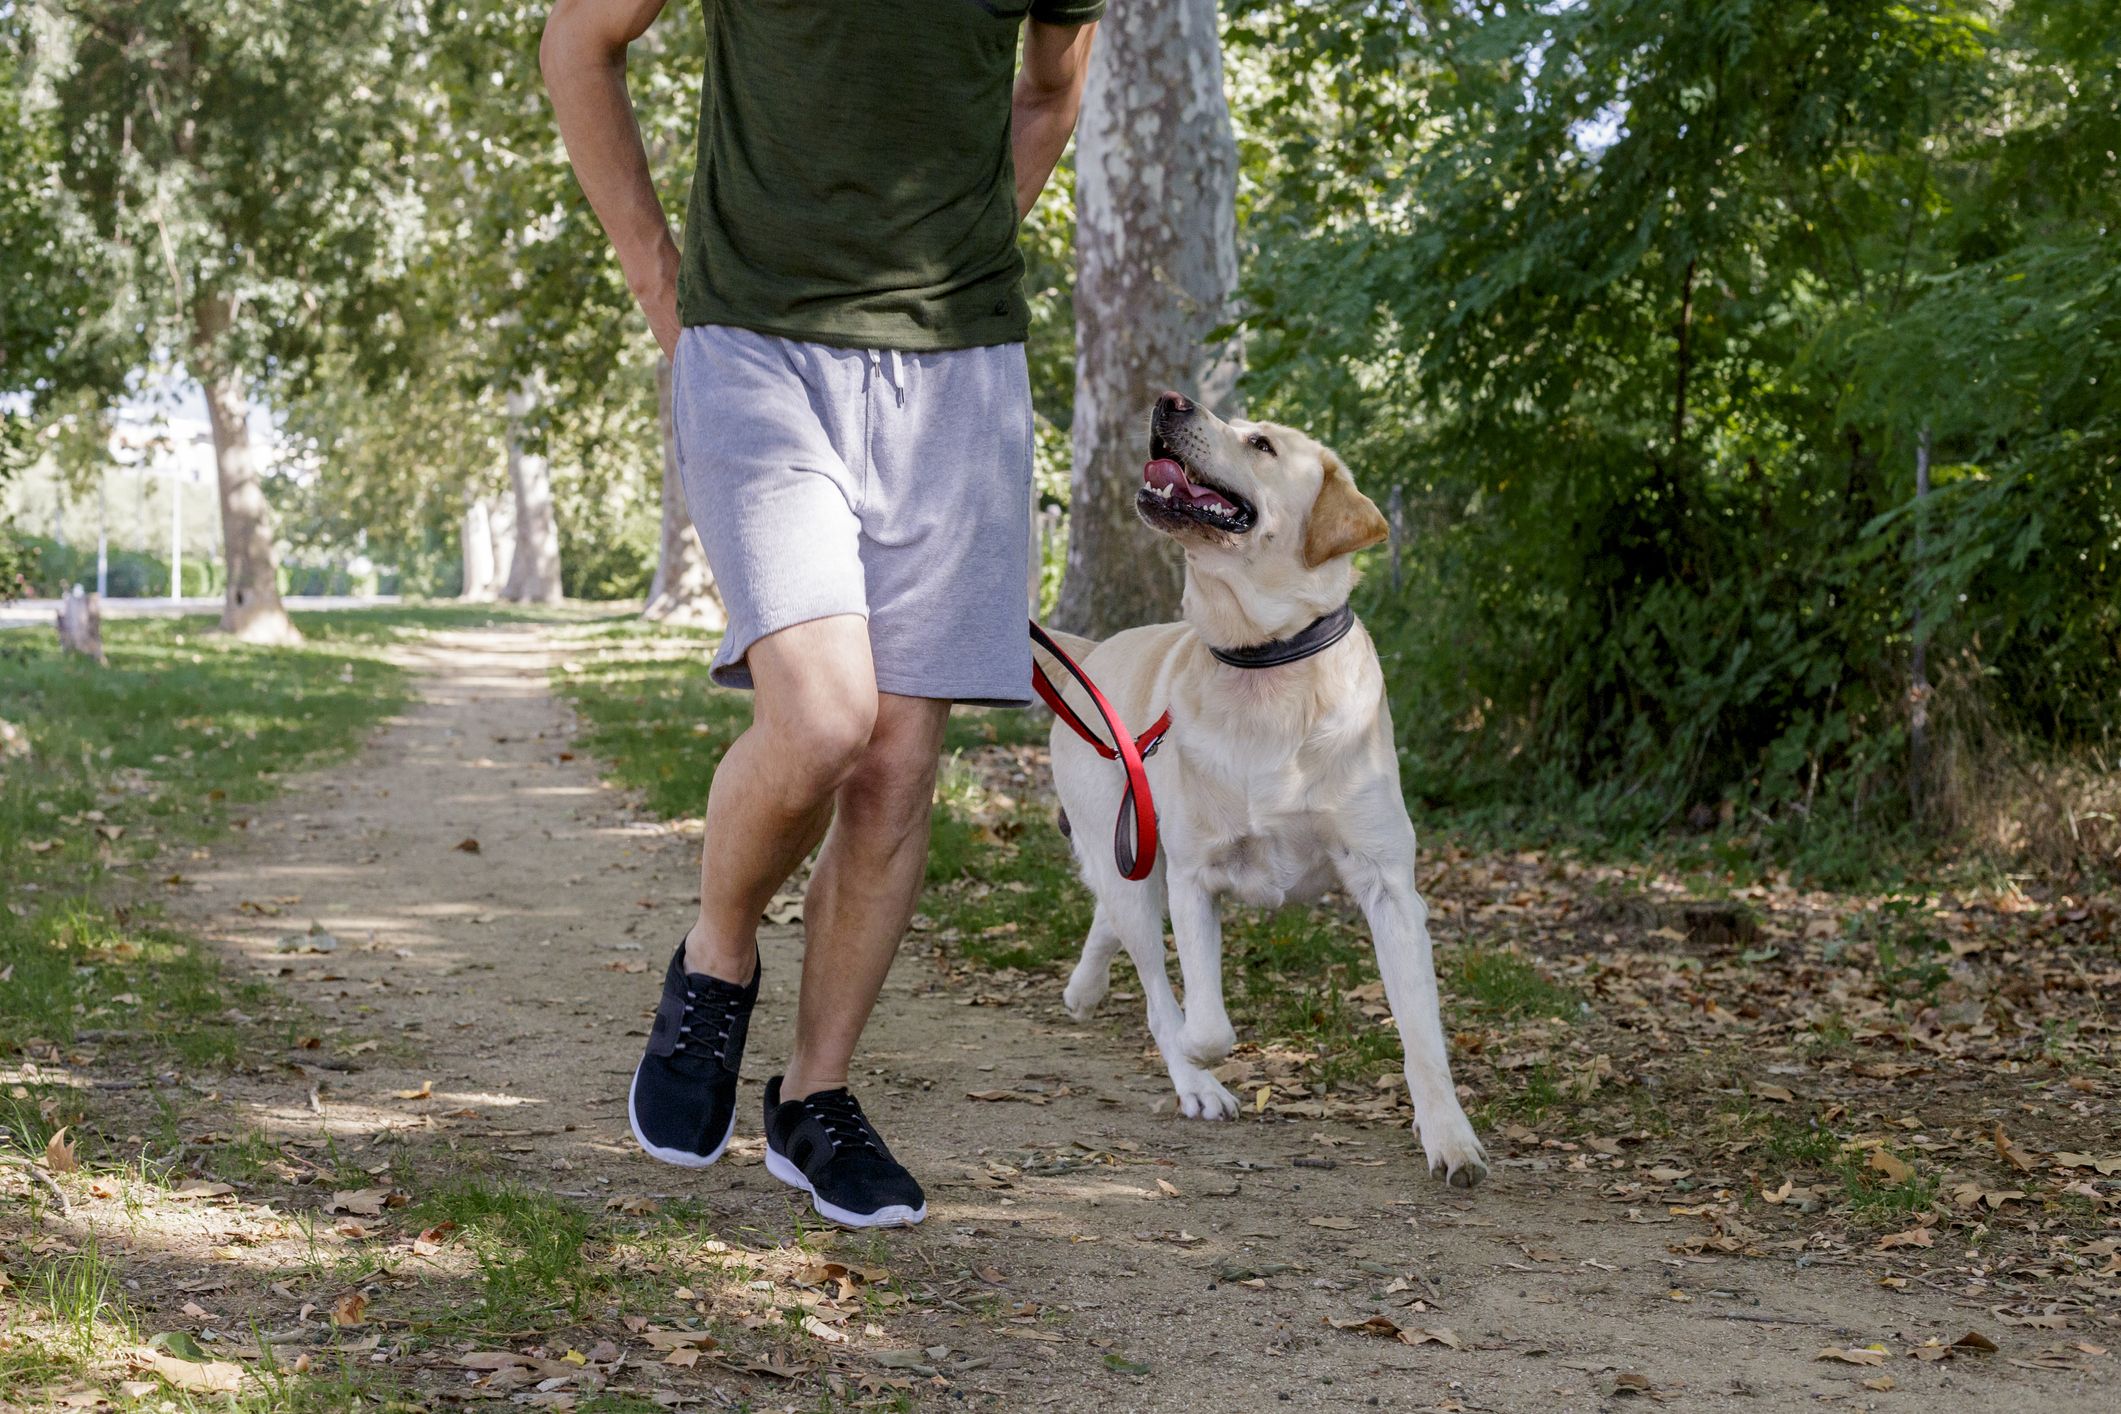 Hardlopen met je hond: 5 redenen dat een goed idee is